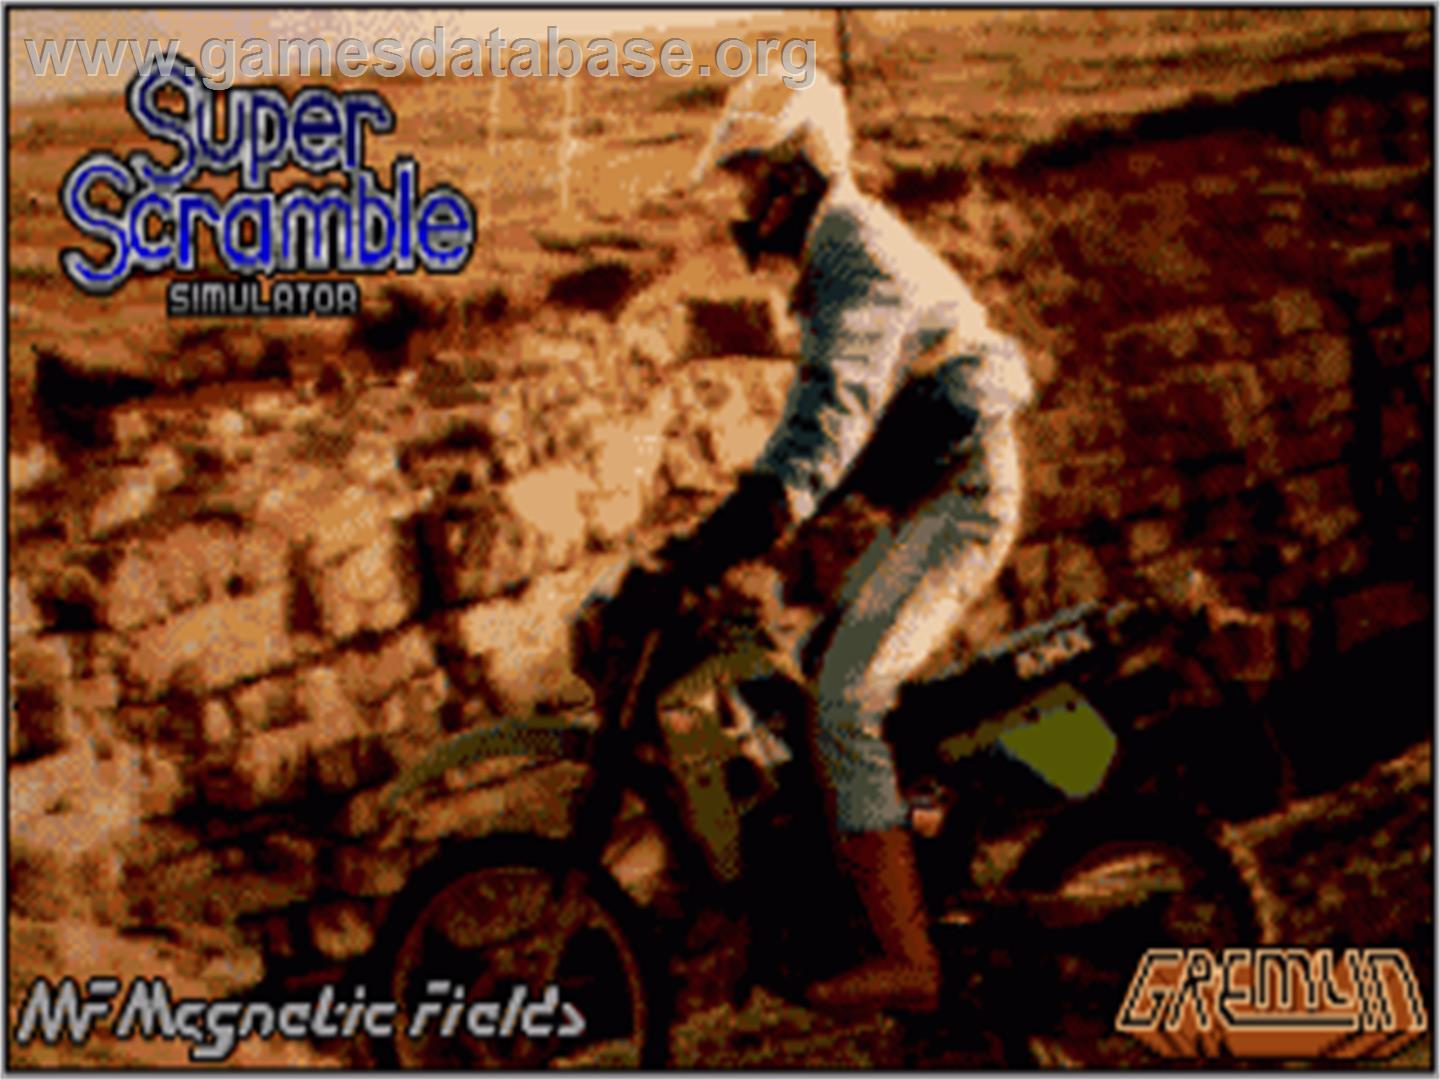 Super Scramble Simulator - Commodore Amiga - Artwork - Title Screen